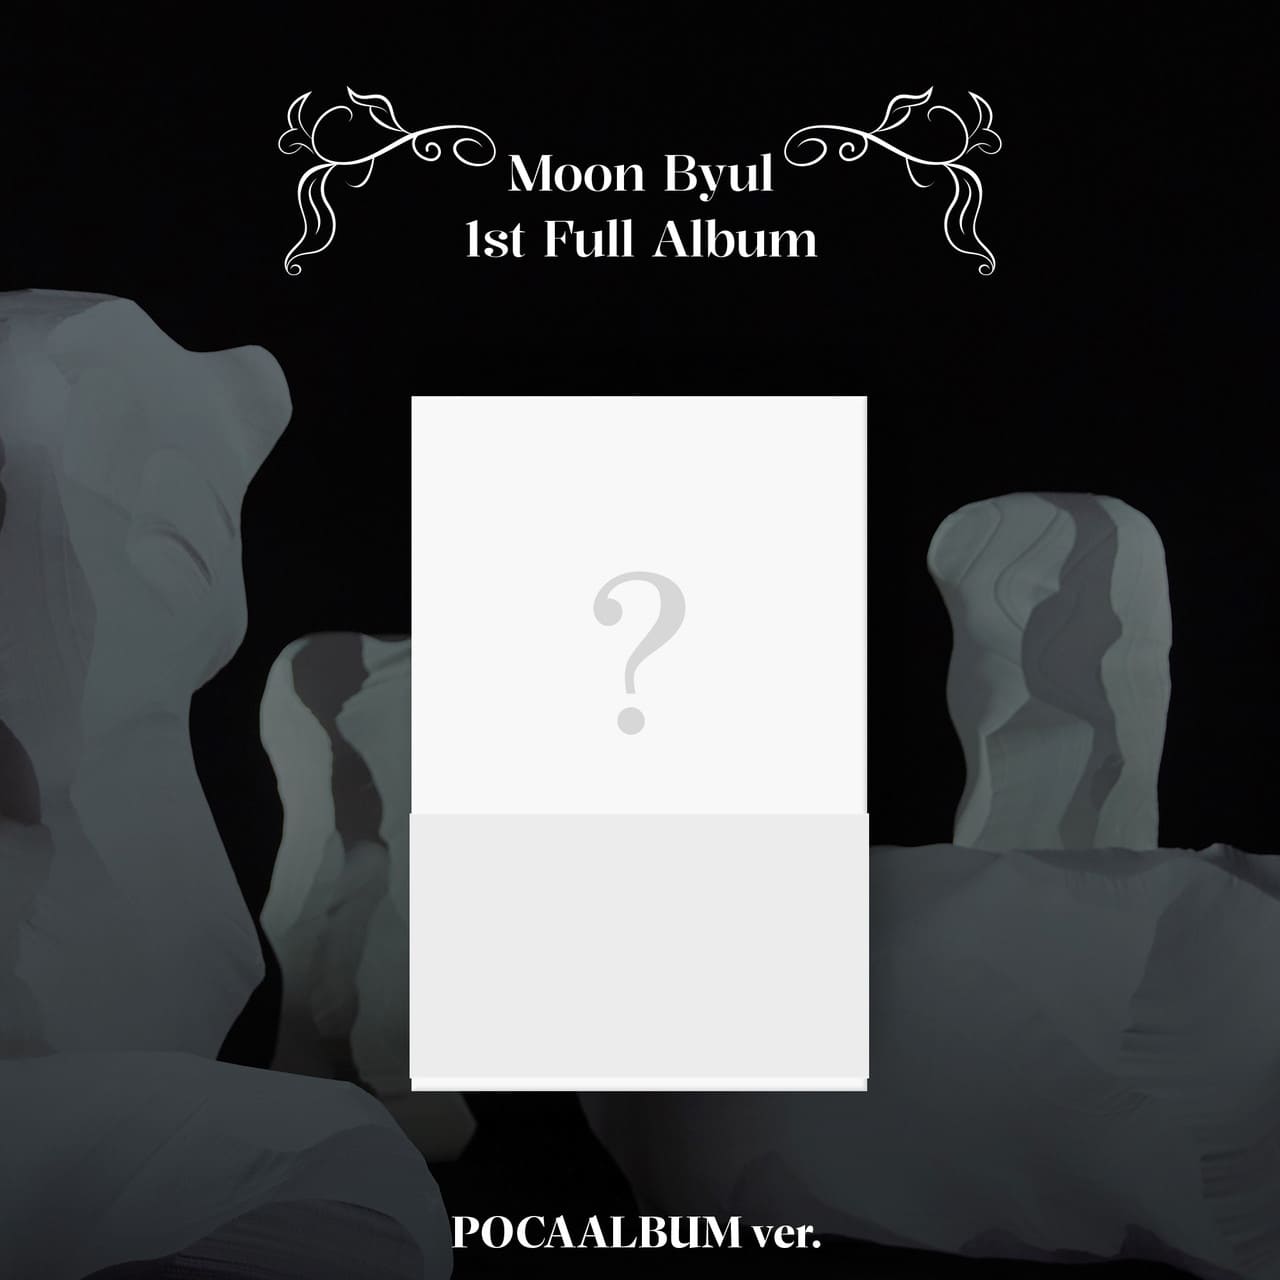 Moonbyul 1st Full Album 'Starlit of Muse' Poca Album Version Preview